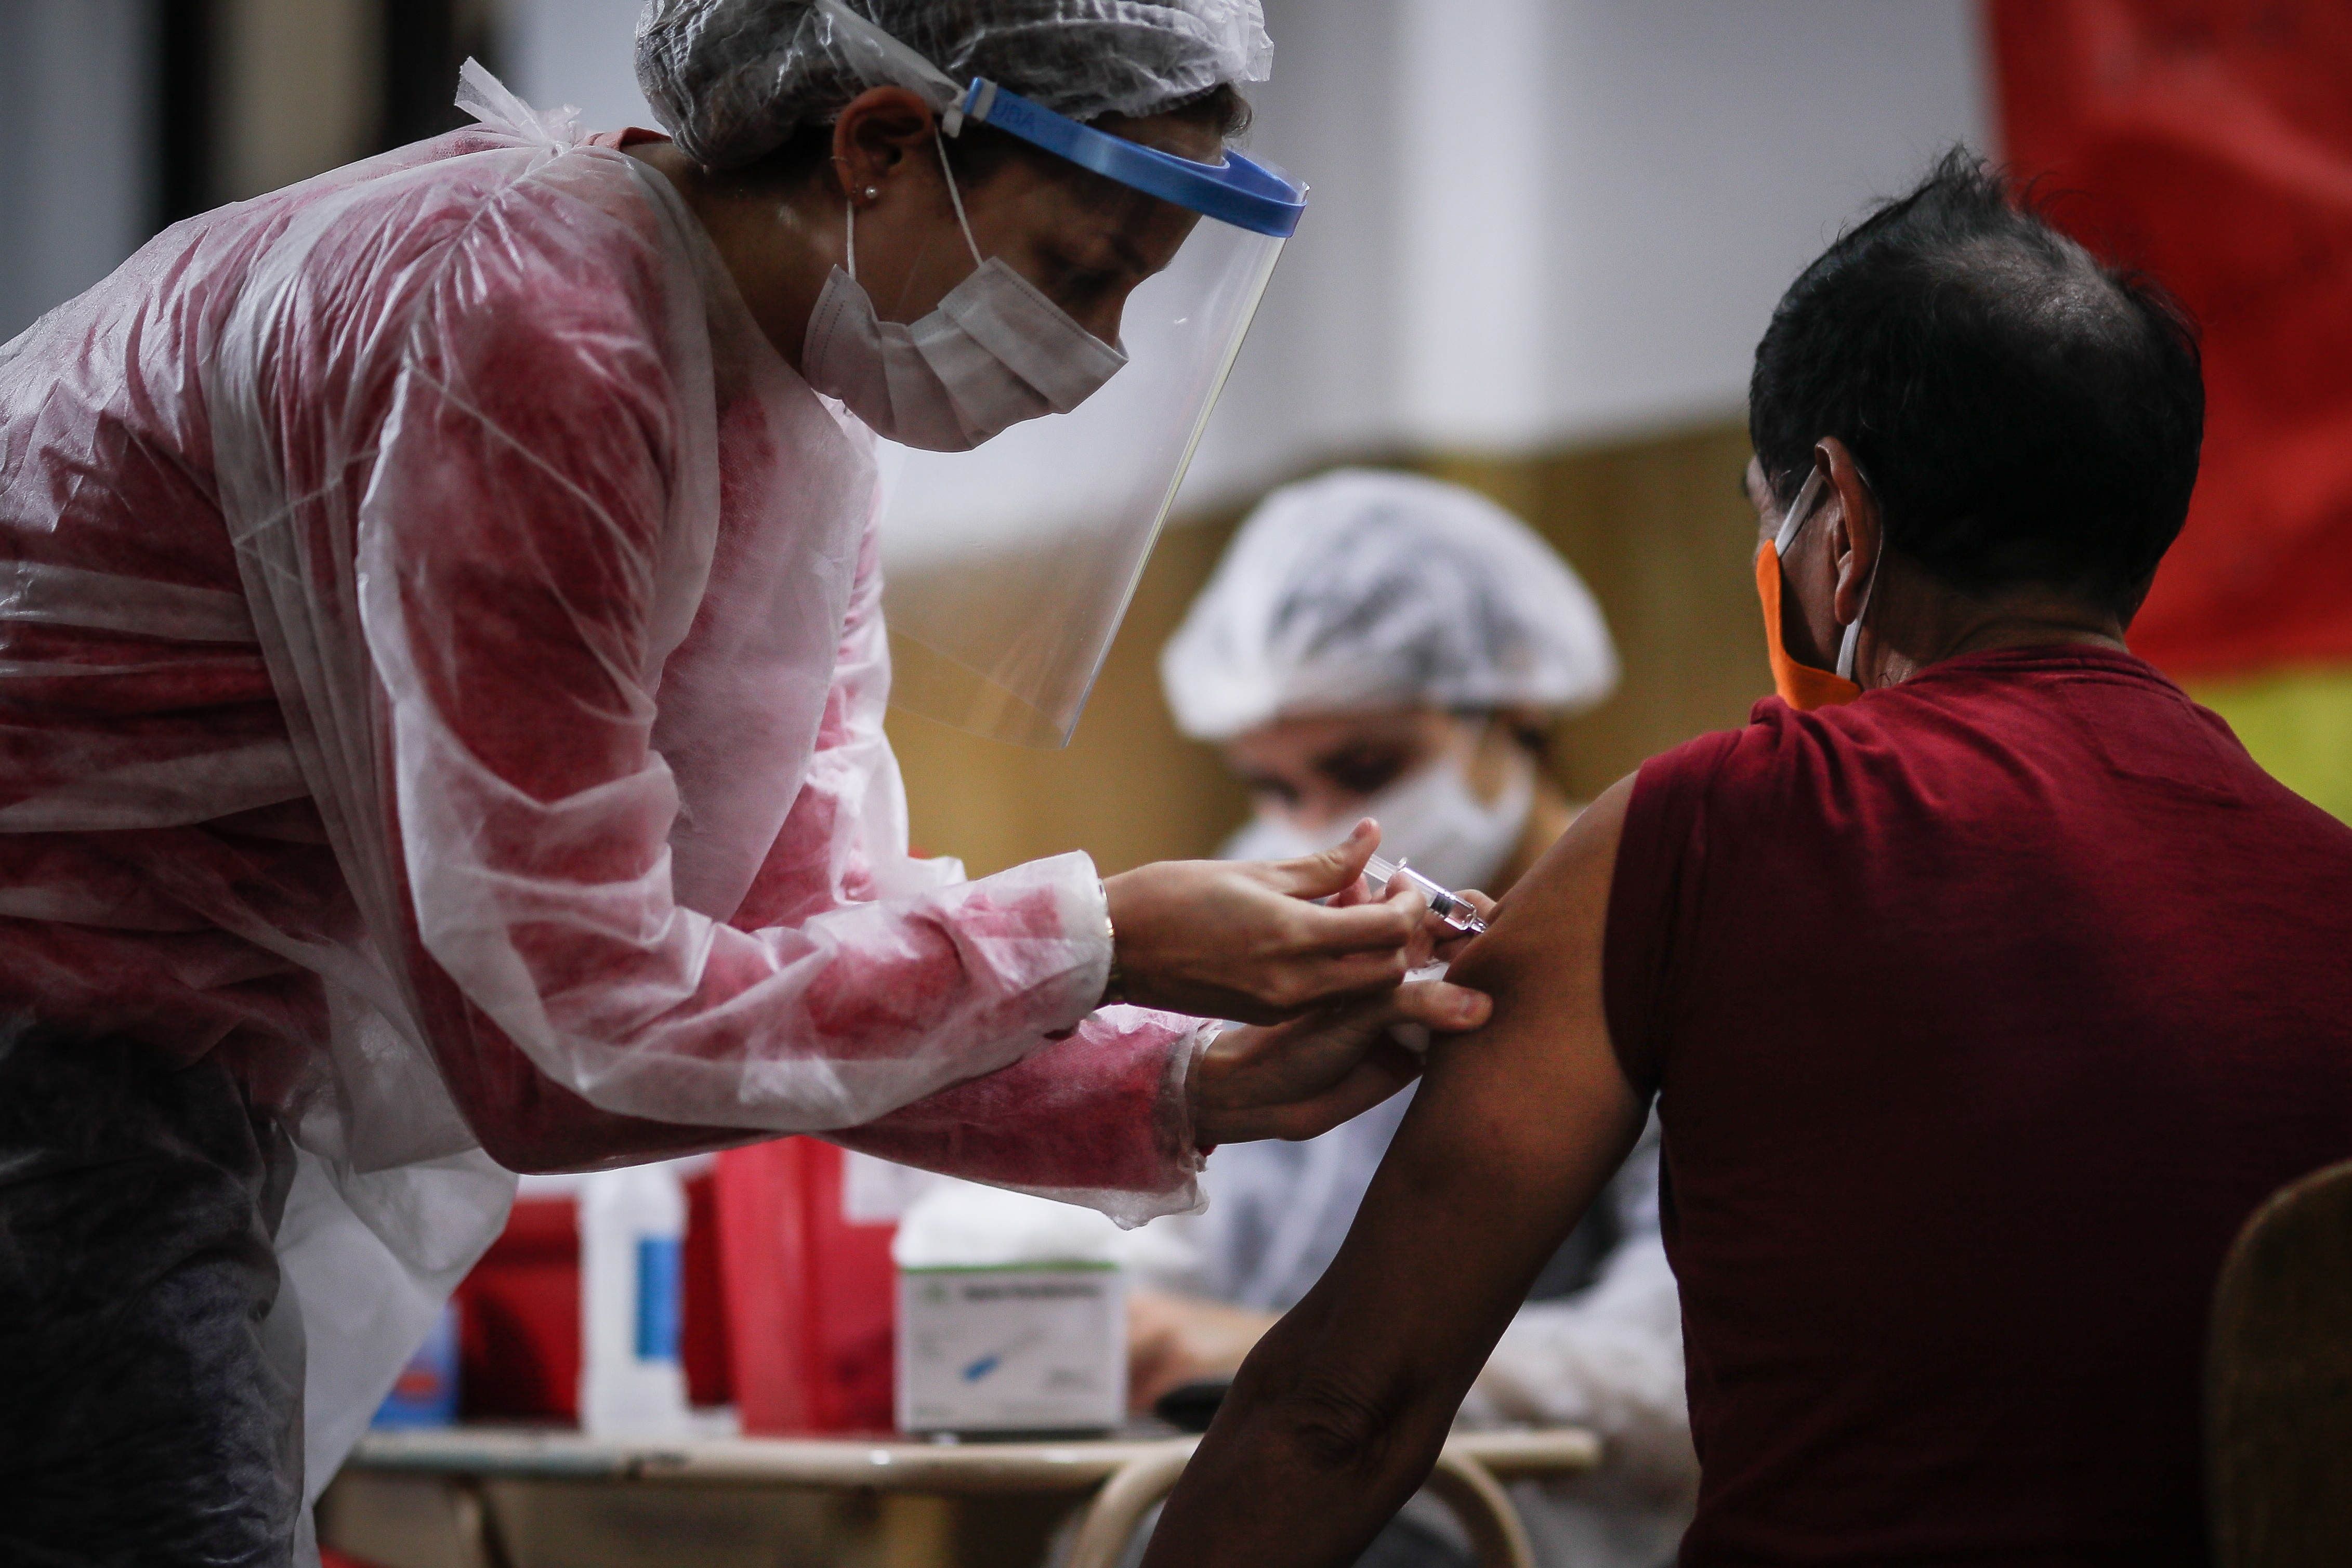 Las jornadas de inmunización deben continuar en medio de la pandemia, porque no hacerlo podría significar problemas mayores. (Foto Prensa Libre: Hemeroteca PL)